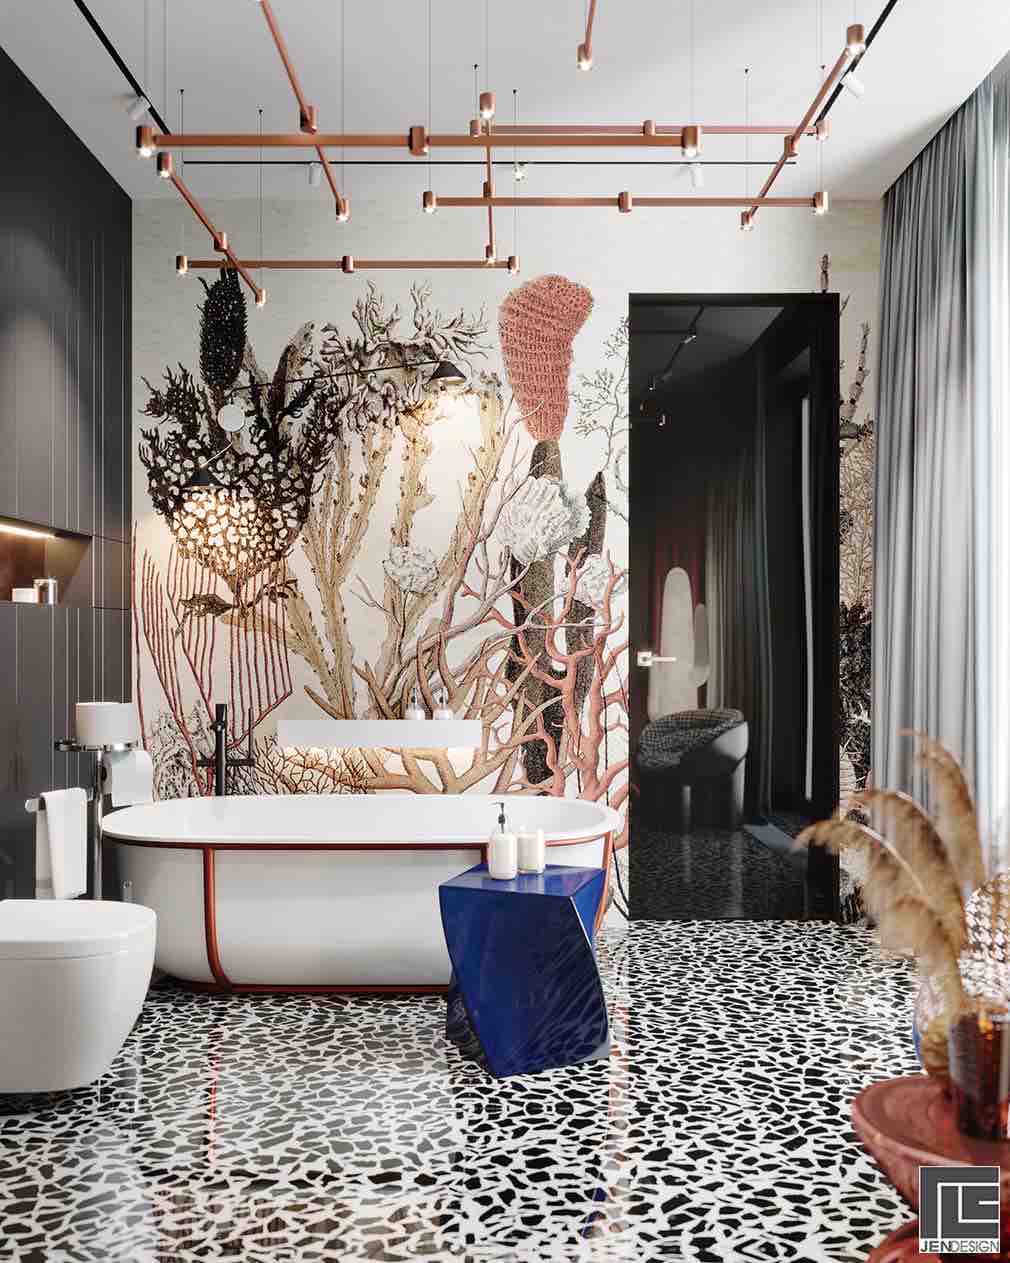 Tranh dán tường và giấy dán tường trang trí khác thường kết hợp hoàn hảo với bồn tắm Agape